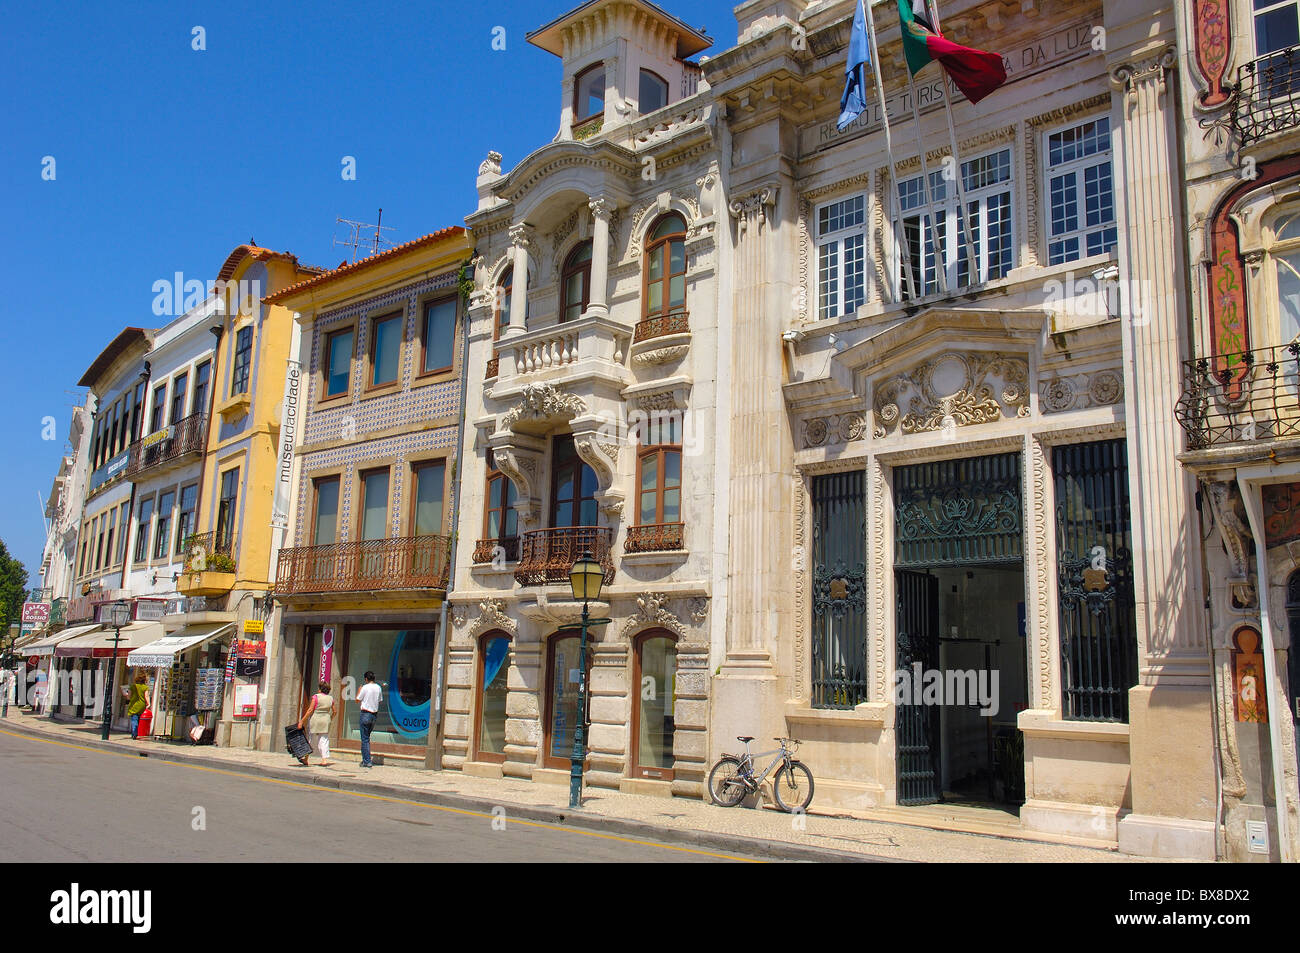 Old town, Aveiro, Beiras region, Portugal Stock Photo